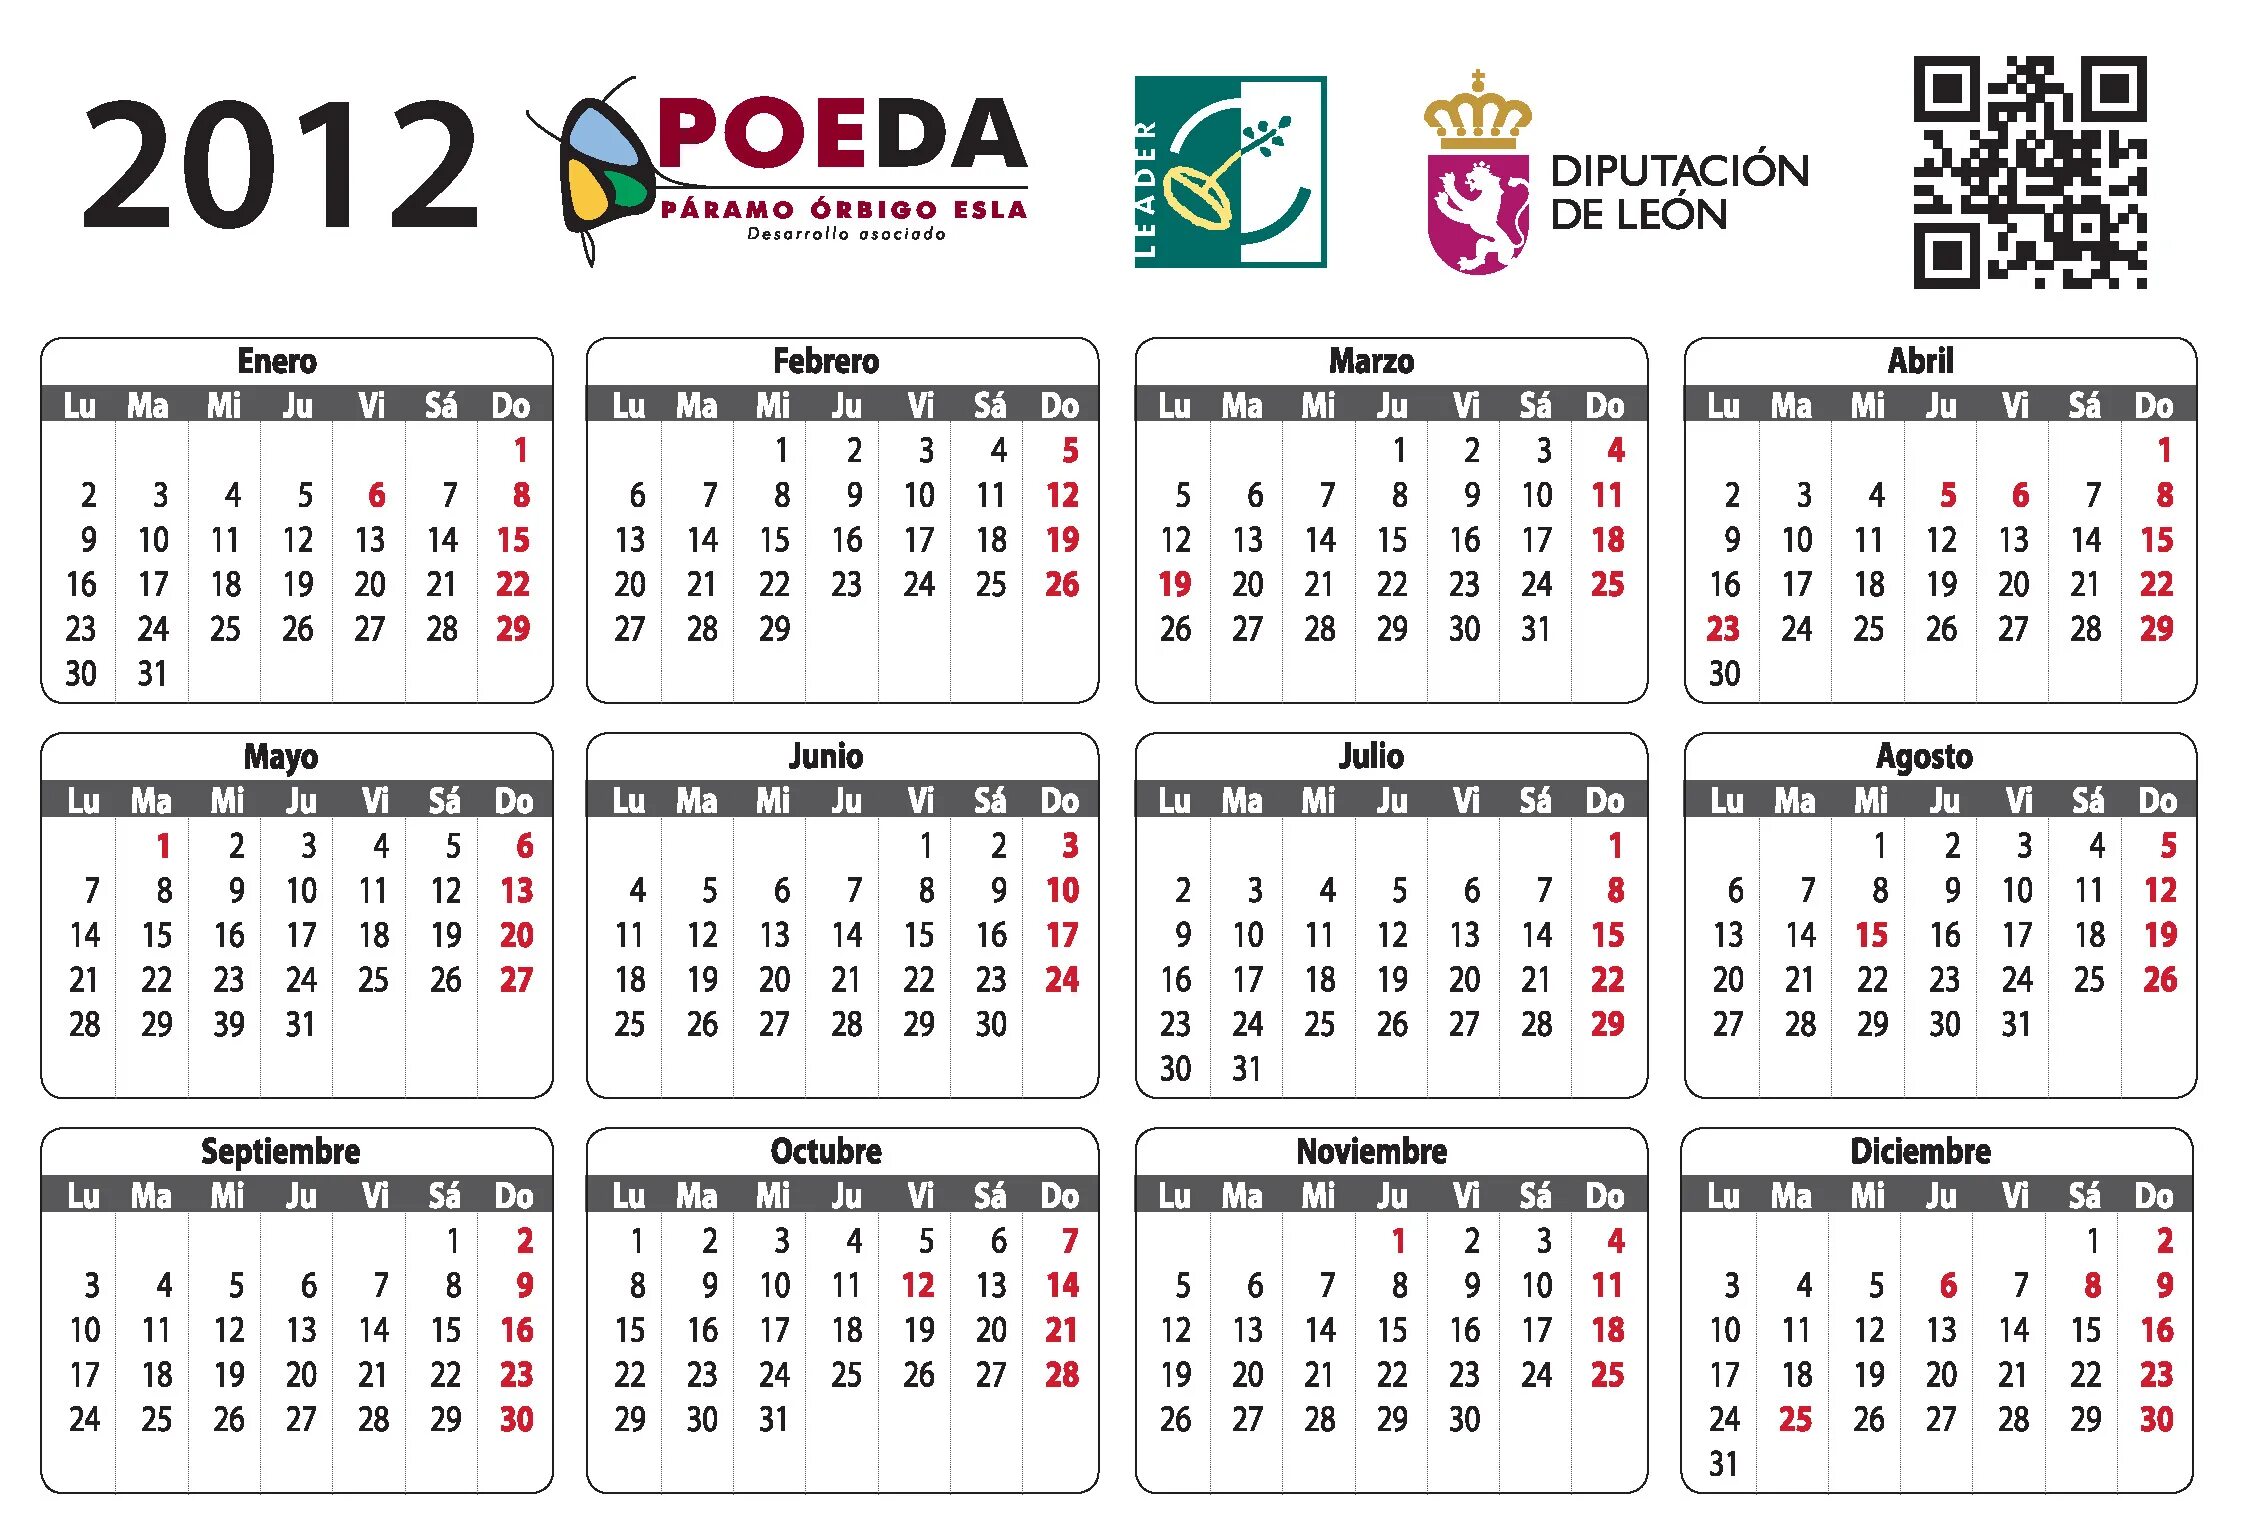 Календарио. Календарь 2012 года. Календарь за 2012 год. Календарь 2012 года по месяцам. Производственный календарь 2012 года.